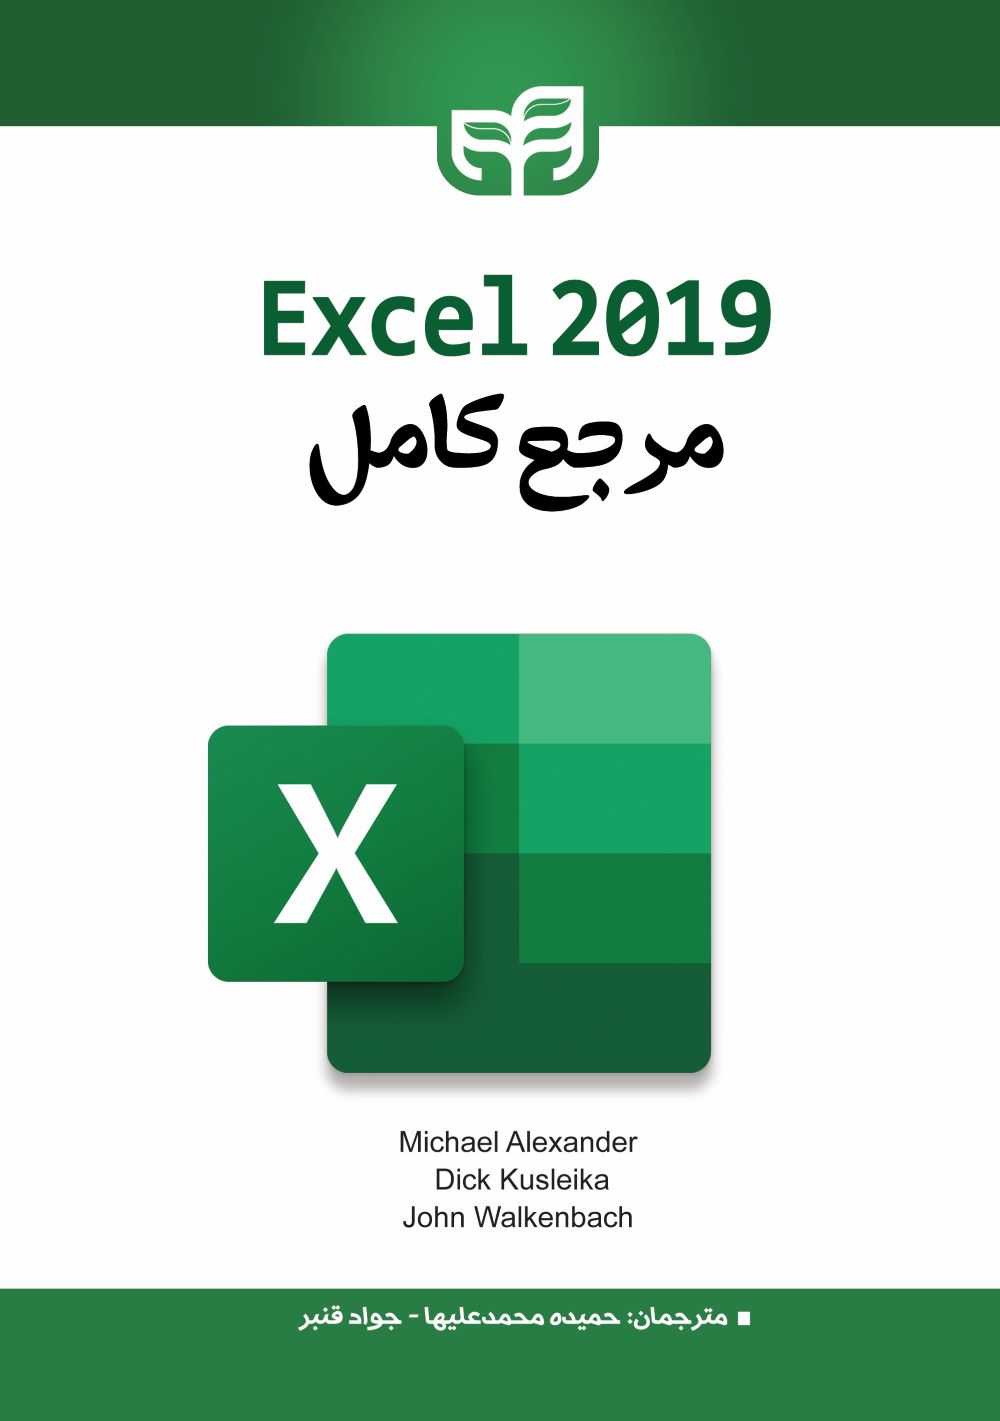  خريد کتاب  مرجع کامل Excel 2019